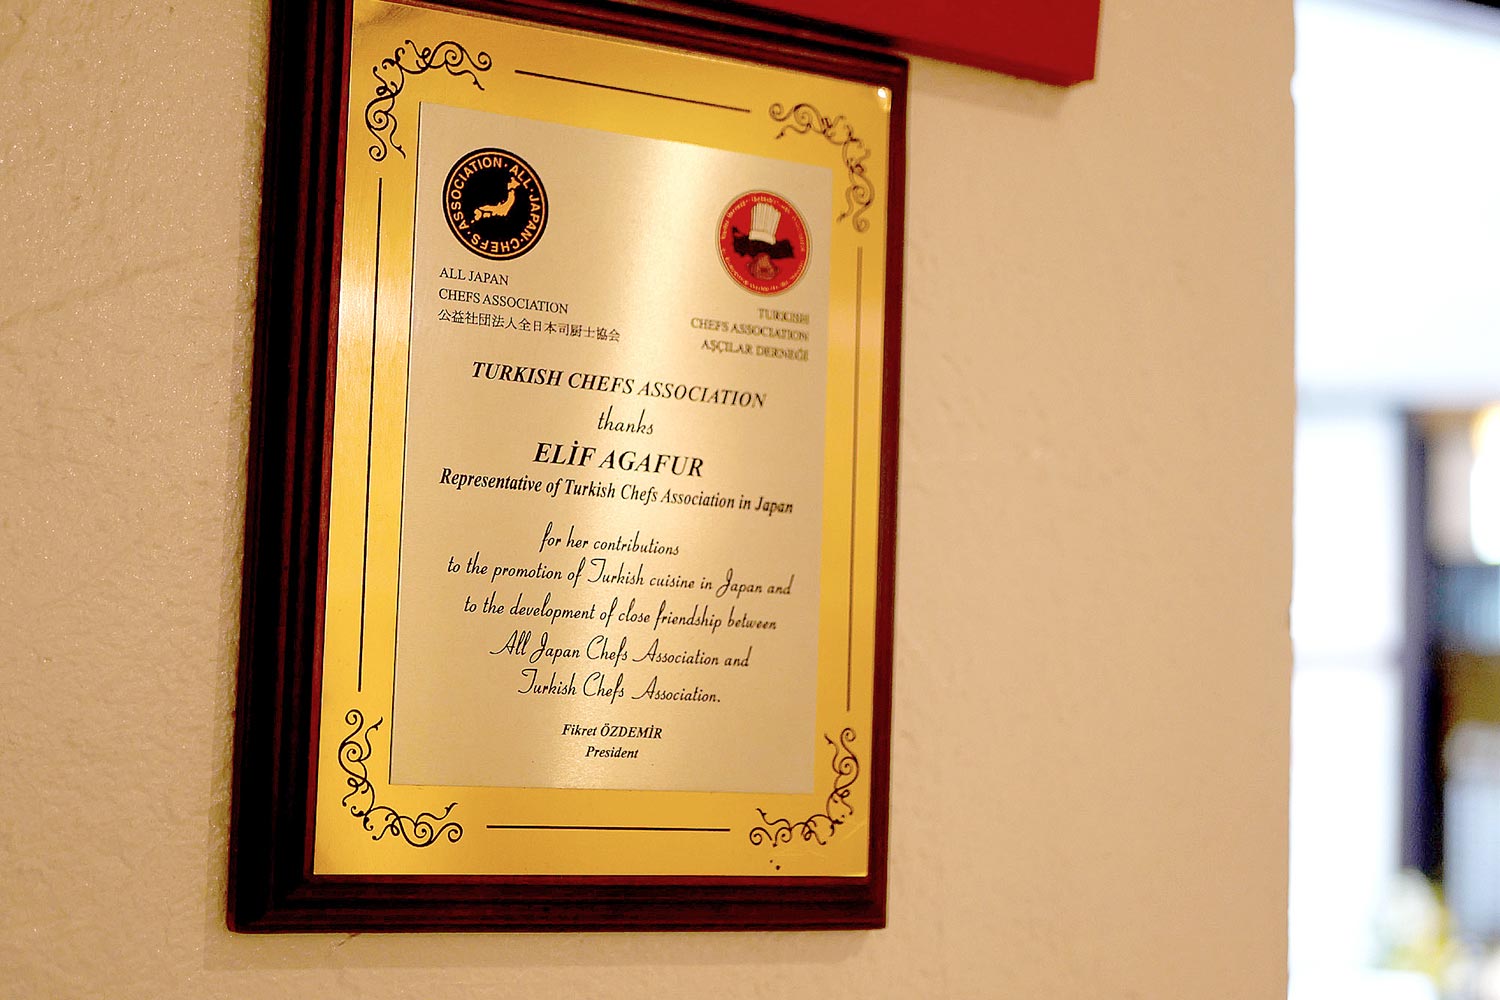 トルコ調理士協会から授与された日本代表の証。